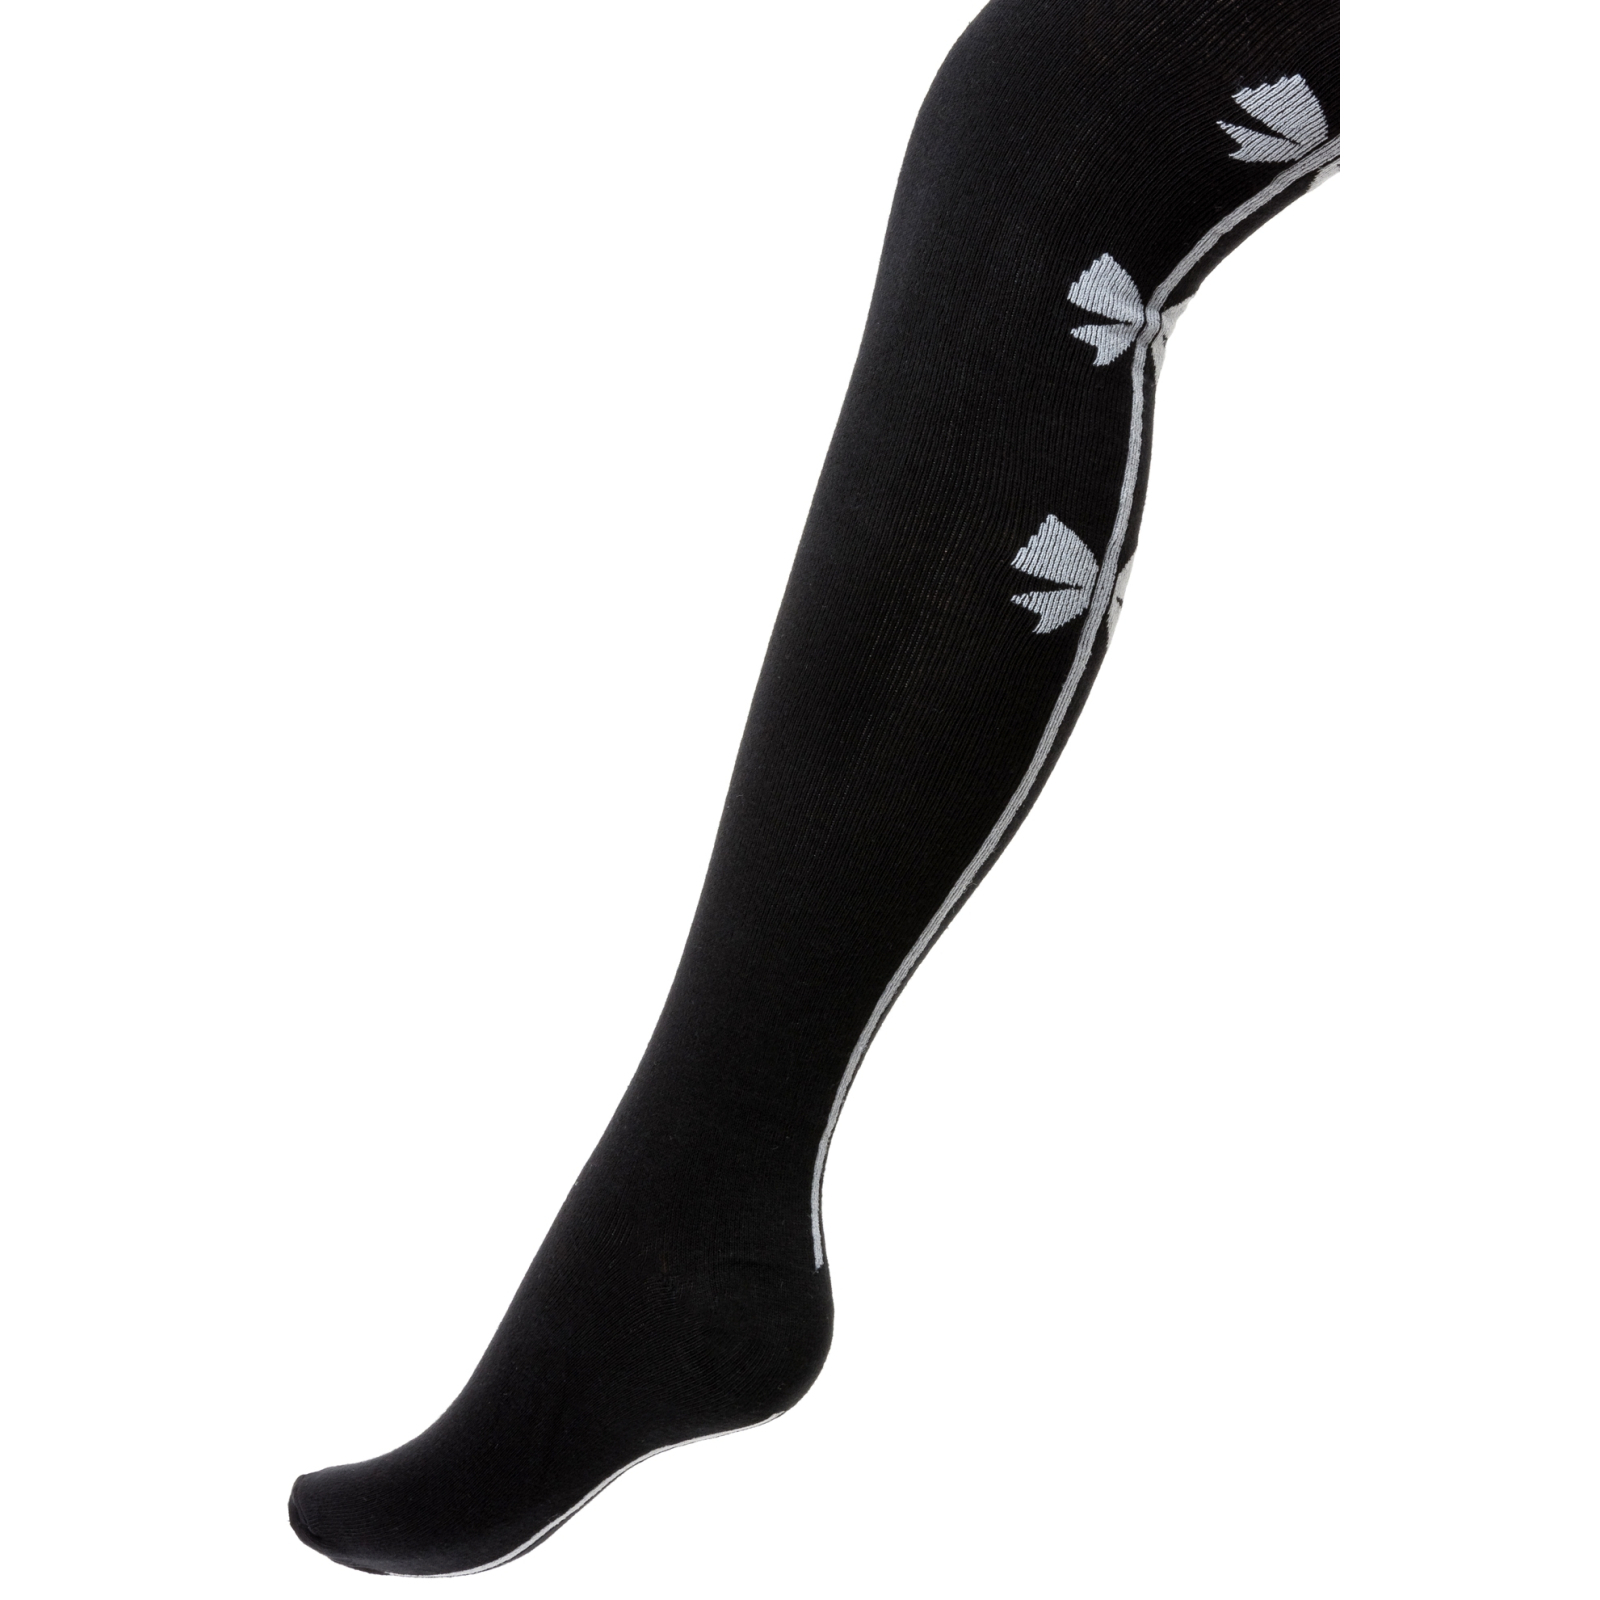 Колготки UCS Socks с бантиками (M0C0301-2046-7G-black)